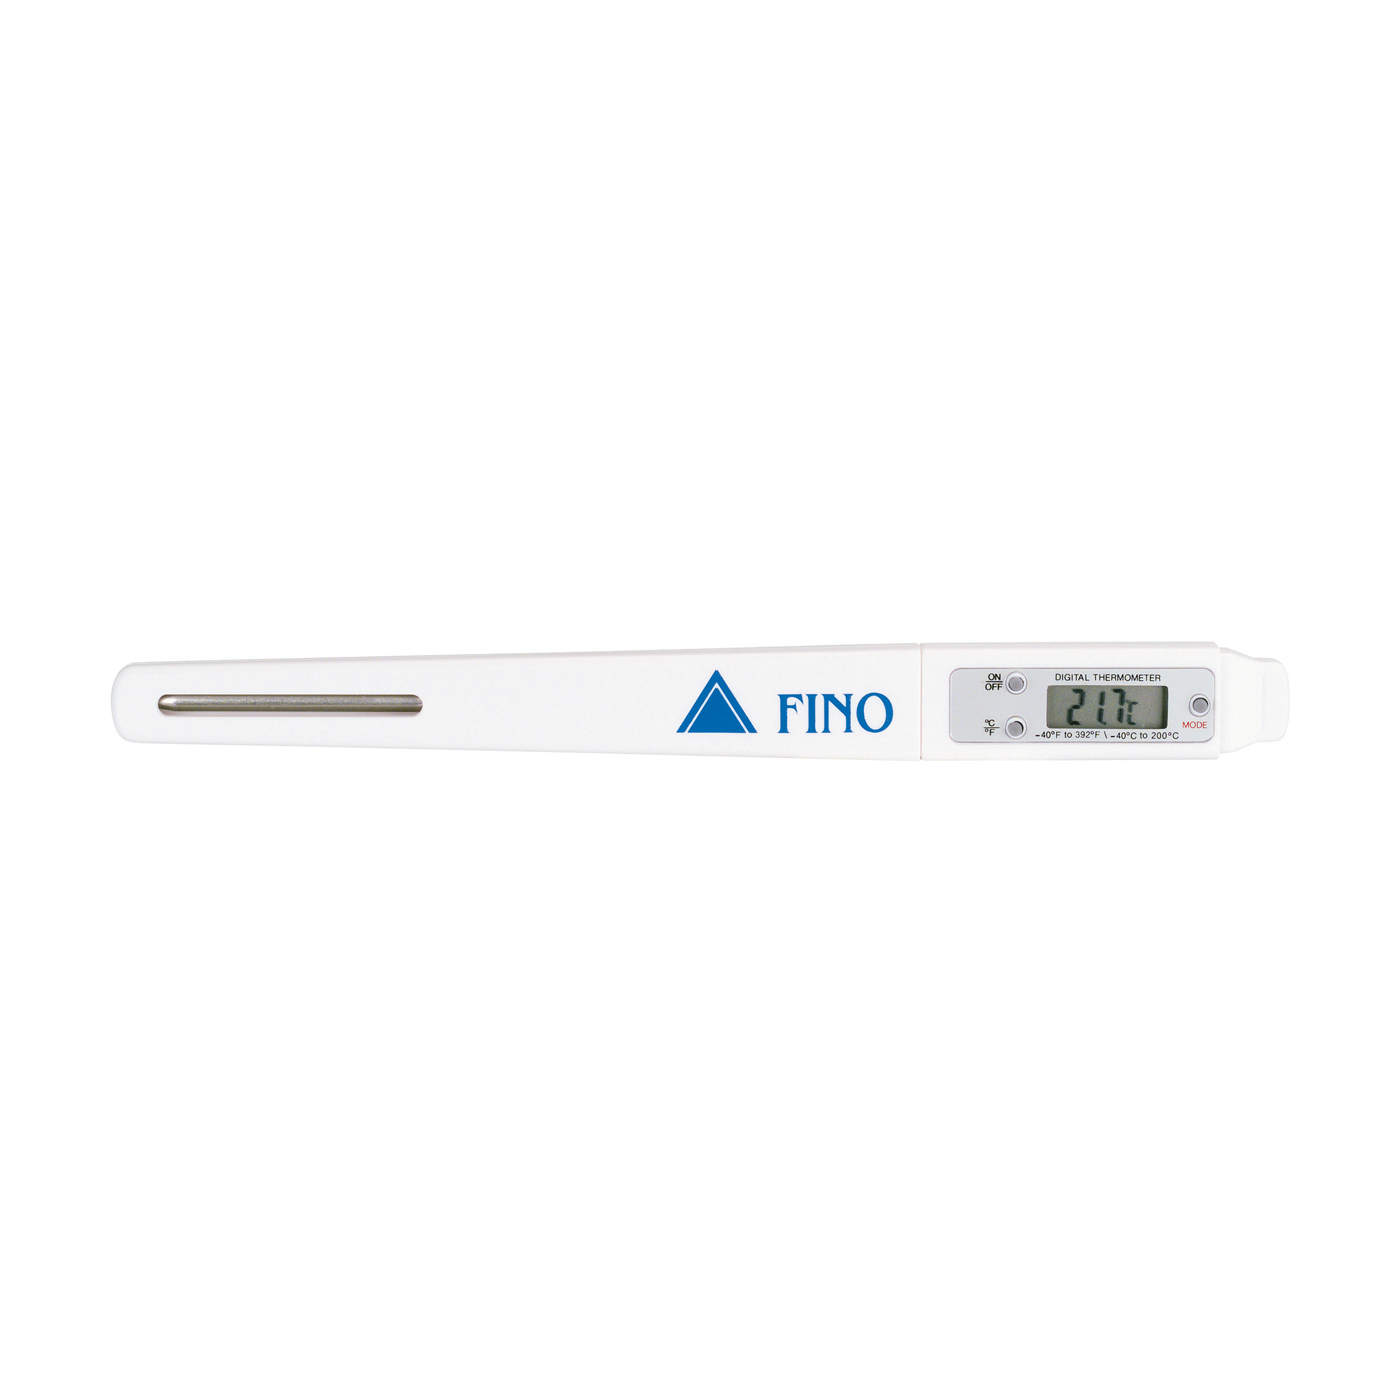 FINO Digital Thermometer - 1 piece